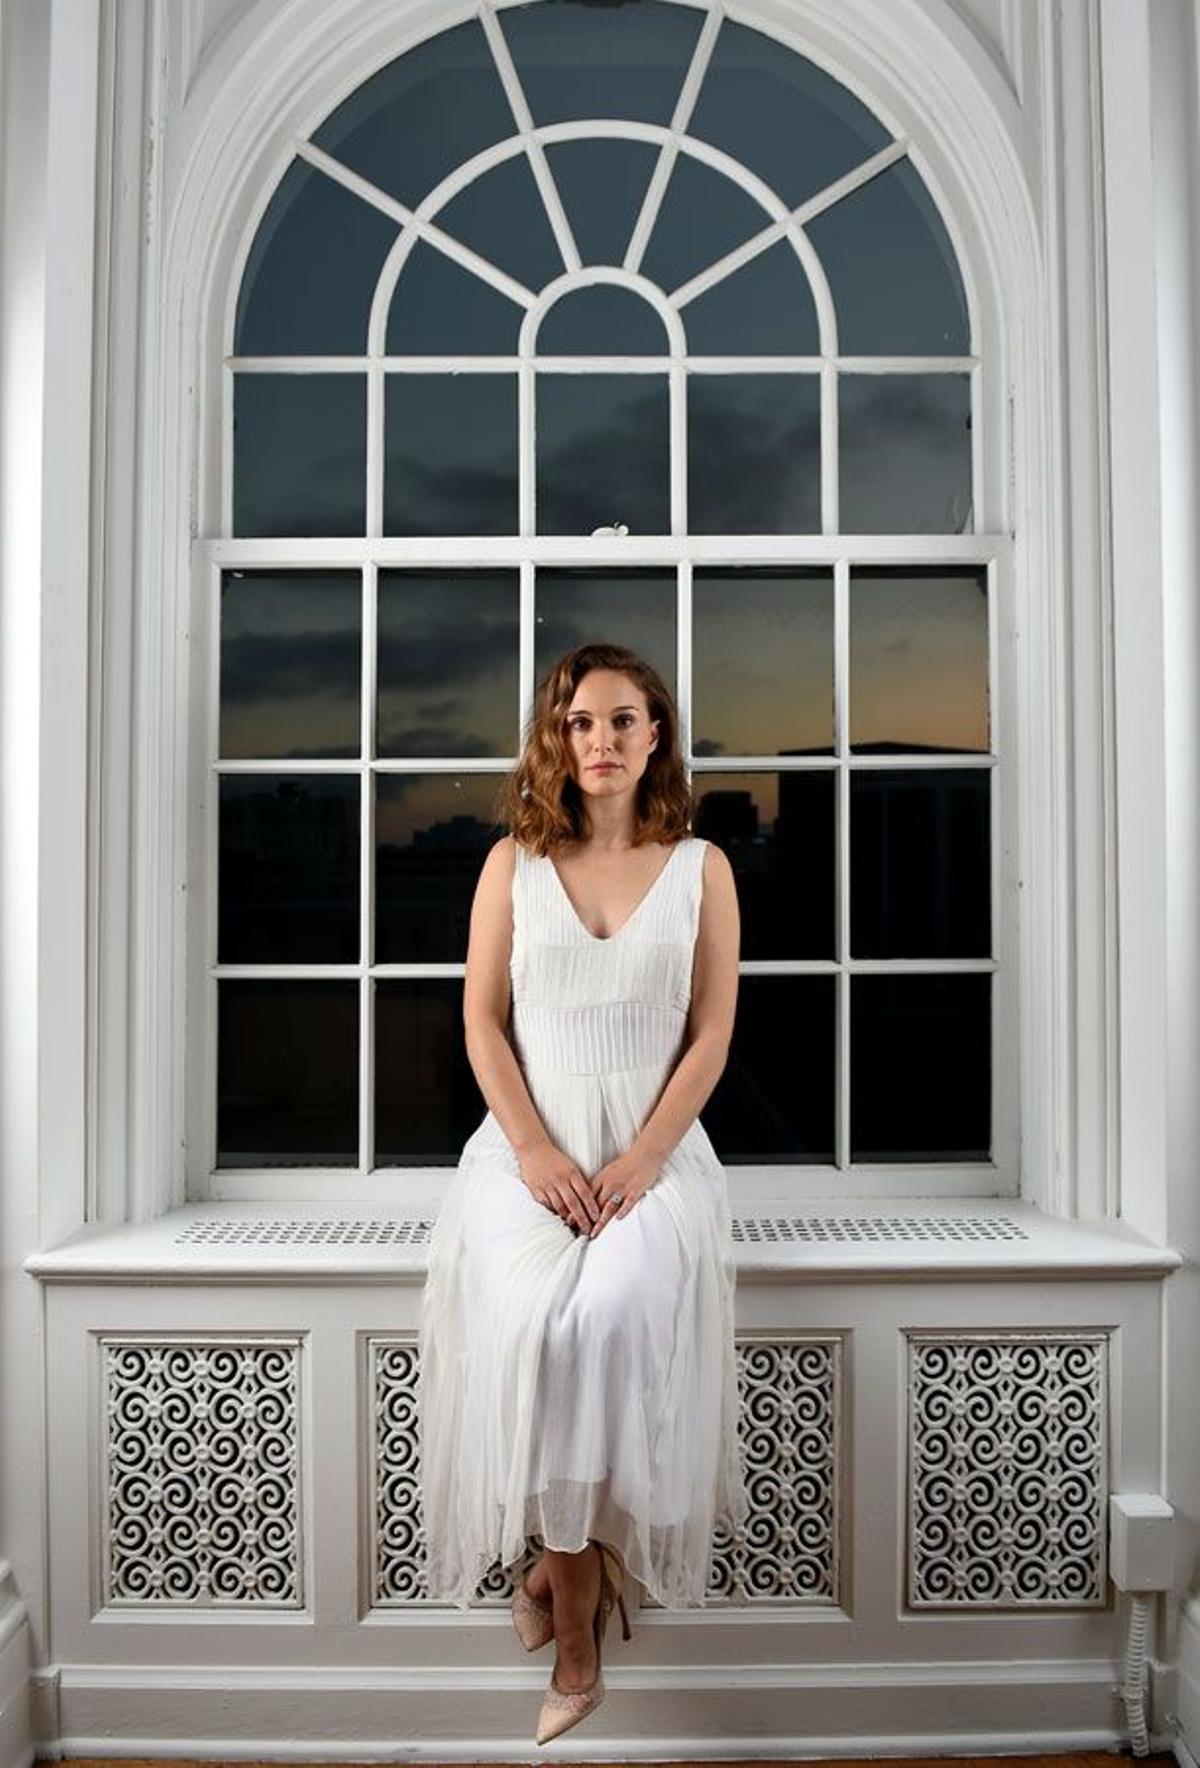 Natalie Portman espectacular con vestido blanco vaporoso